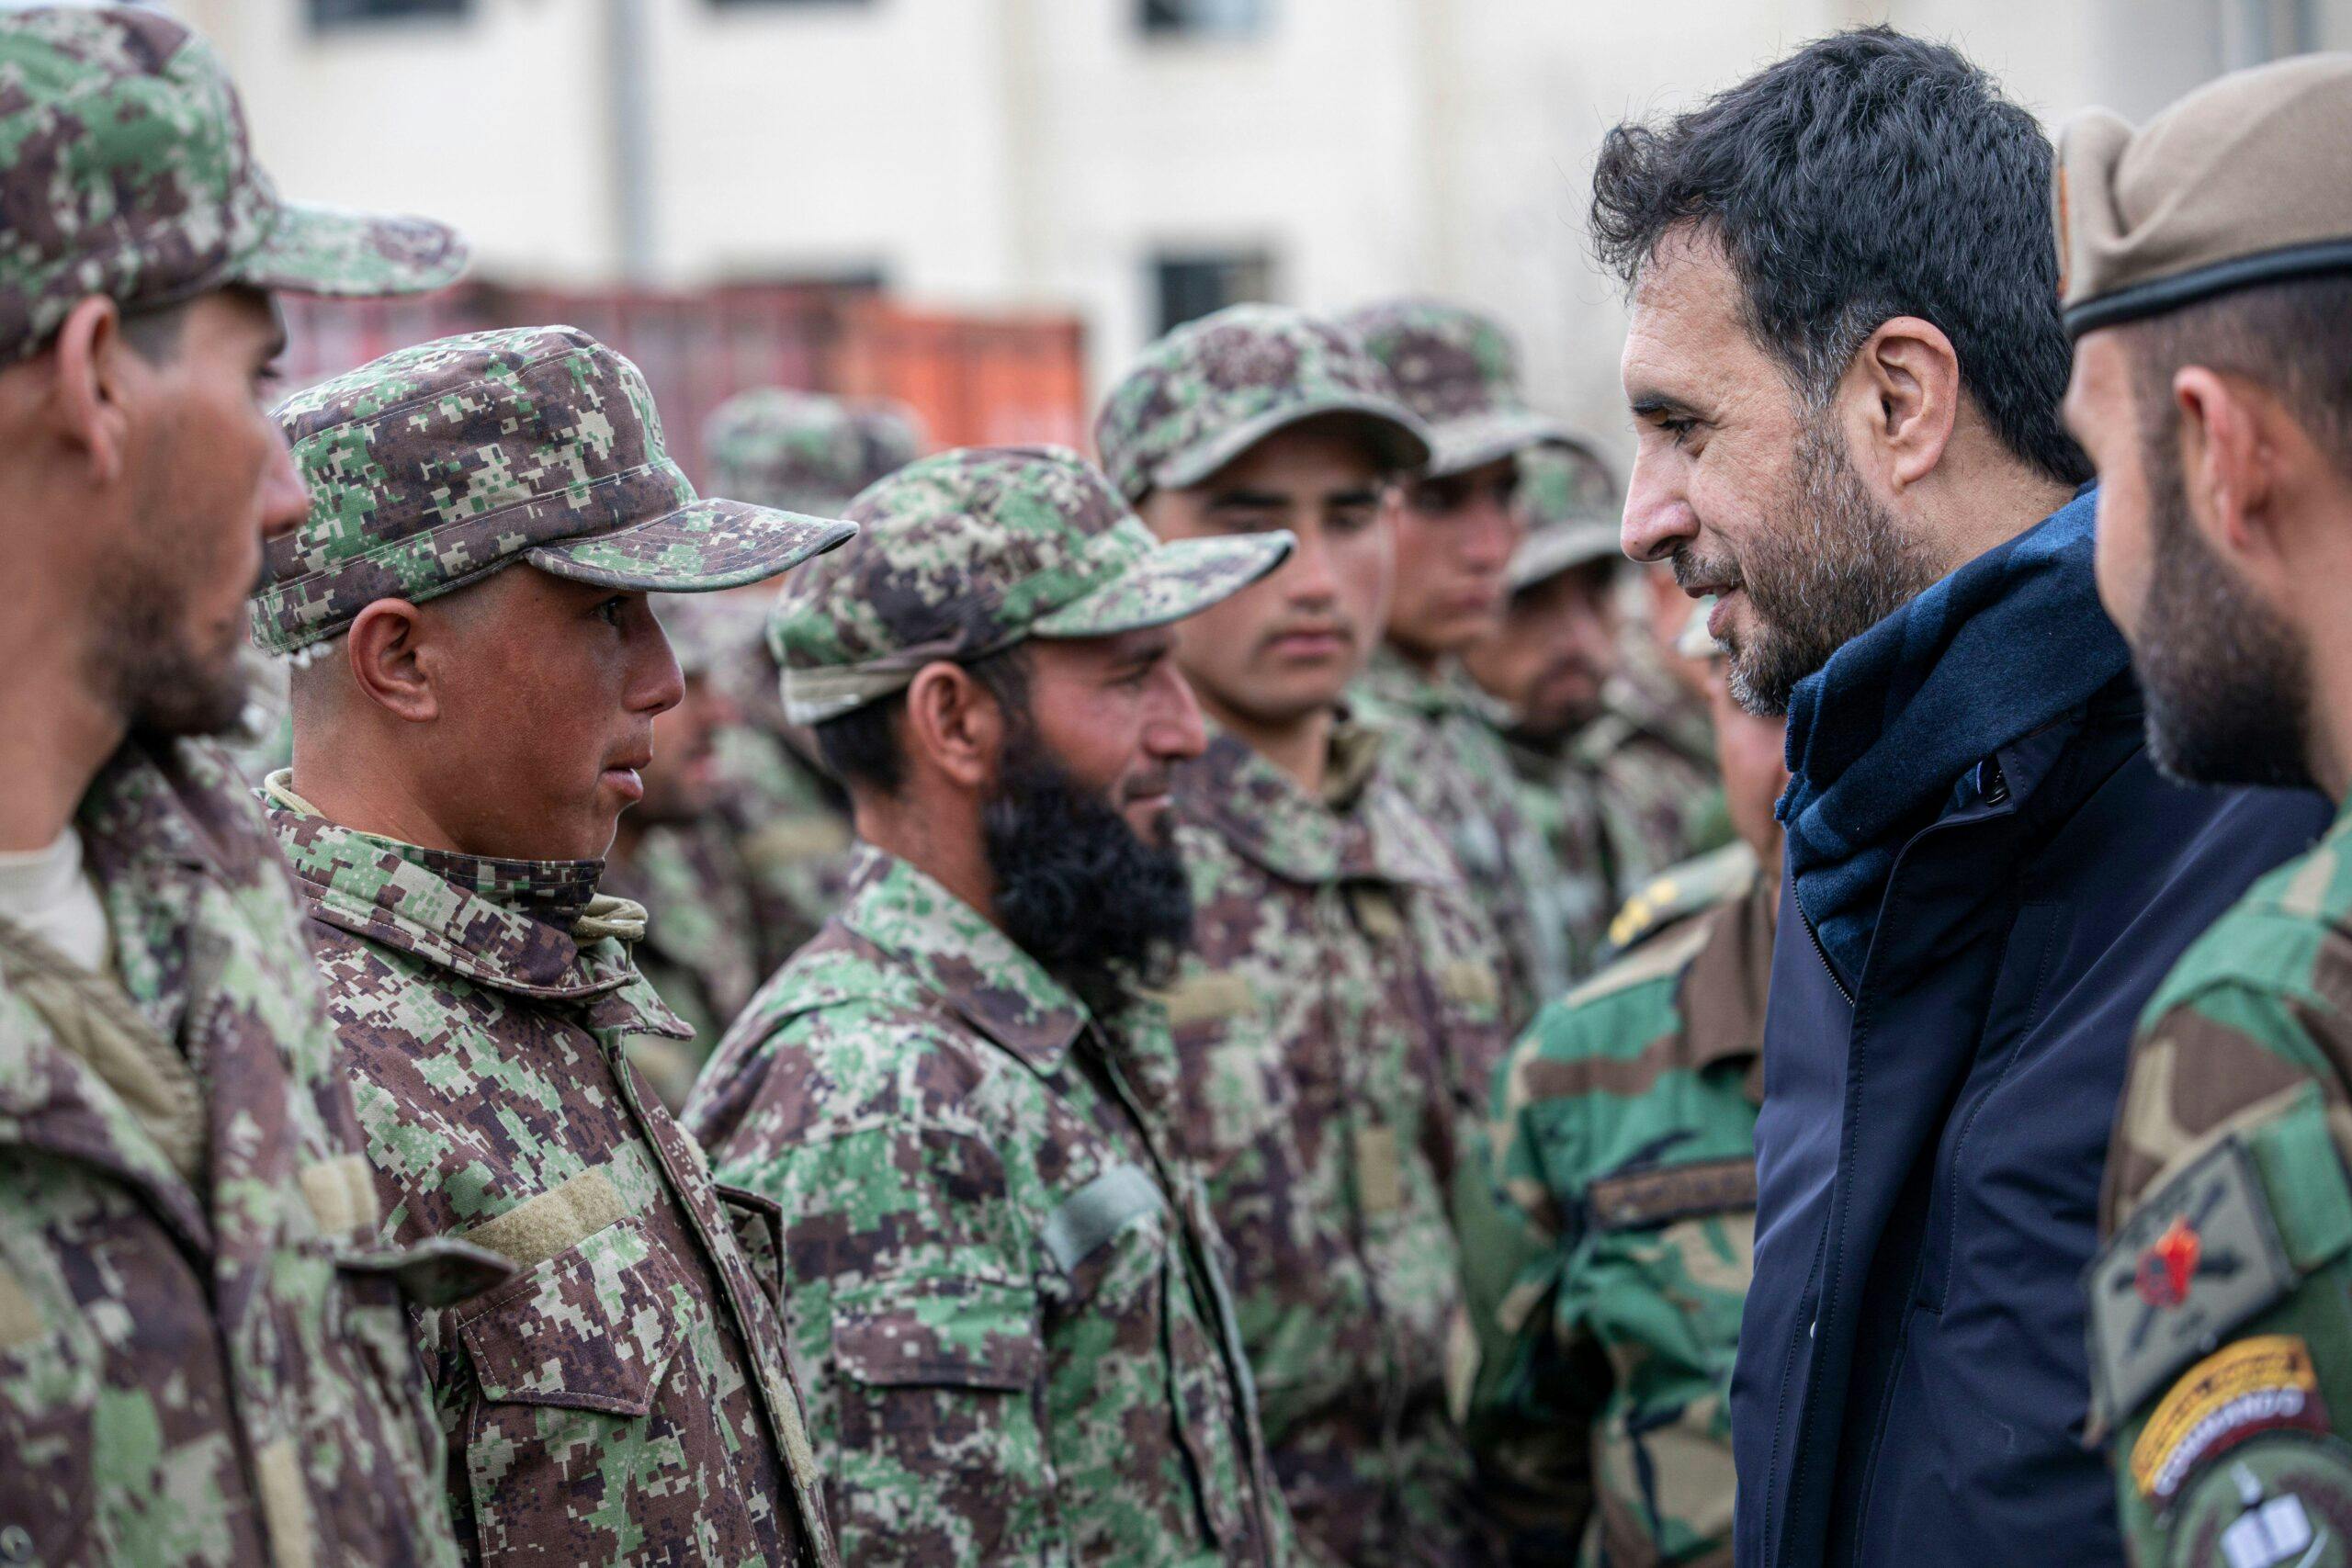 اسدالله خالد، وزیر دفاع افغانستان (سمت راست) در ماه مارس ۲۰۲۰ با کارآموزان ارتش ملی در کابل، افغانستان ملاقات کرد  5/ 2020. CREDIT: U.S. Army Reserve photo by Spc. Jeffery J. Harris/Released